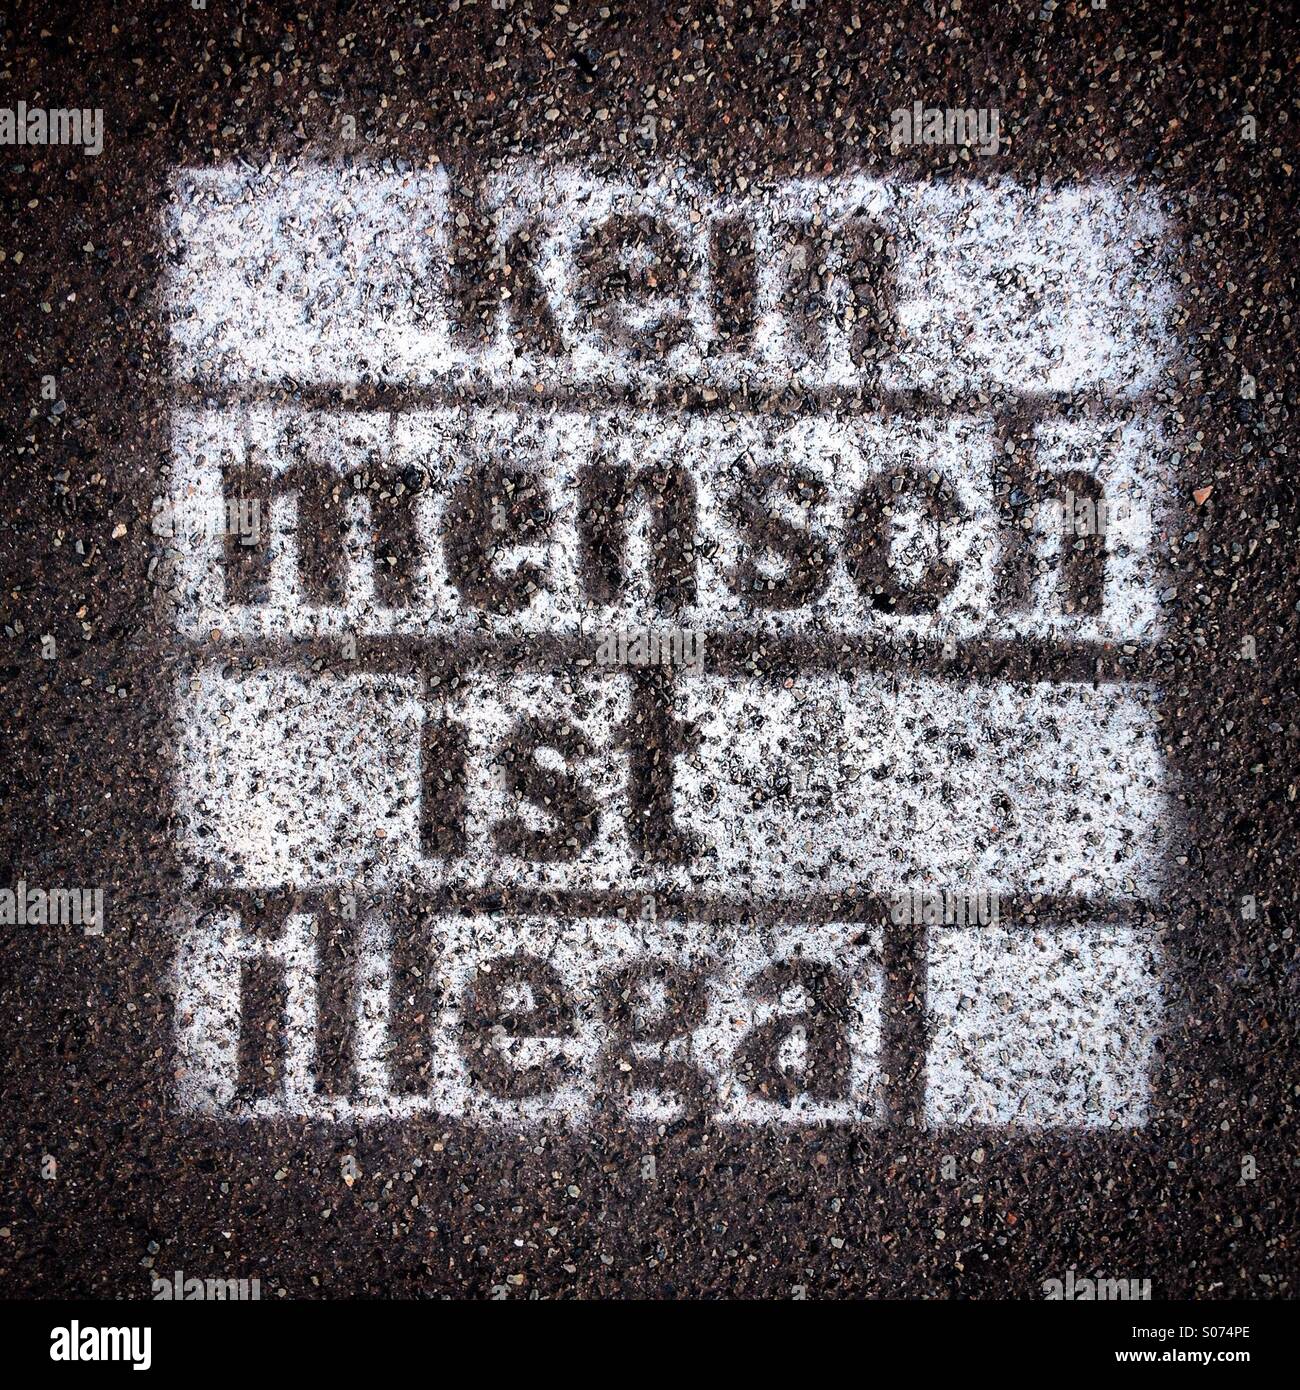 Verniciato a spruzzo graffiti sul marciapiede con parole "Kein Mensch ist illegale" scritta in tedesco (nessuna persona è illegale) Foto Stock